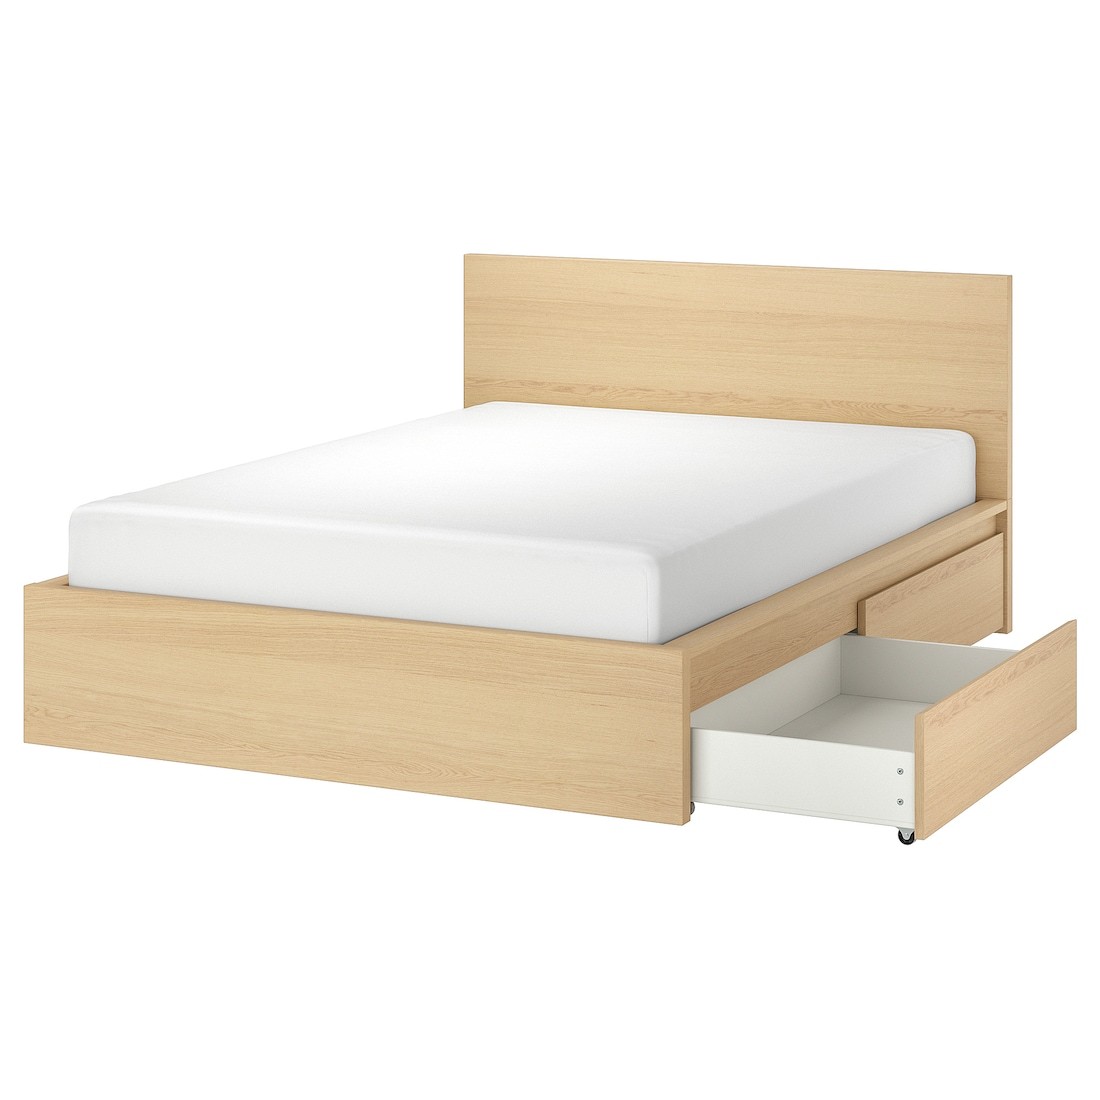 IKEA MALM МАЛЬМ Кровать двуспальная с 2 ящиками, дубовый шпон беленый / Lindbåden, 140x200 см 39494996 394.949.96